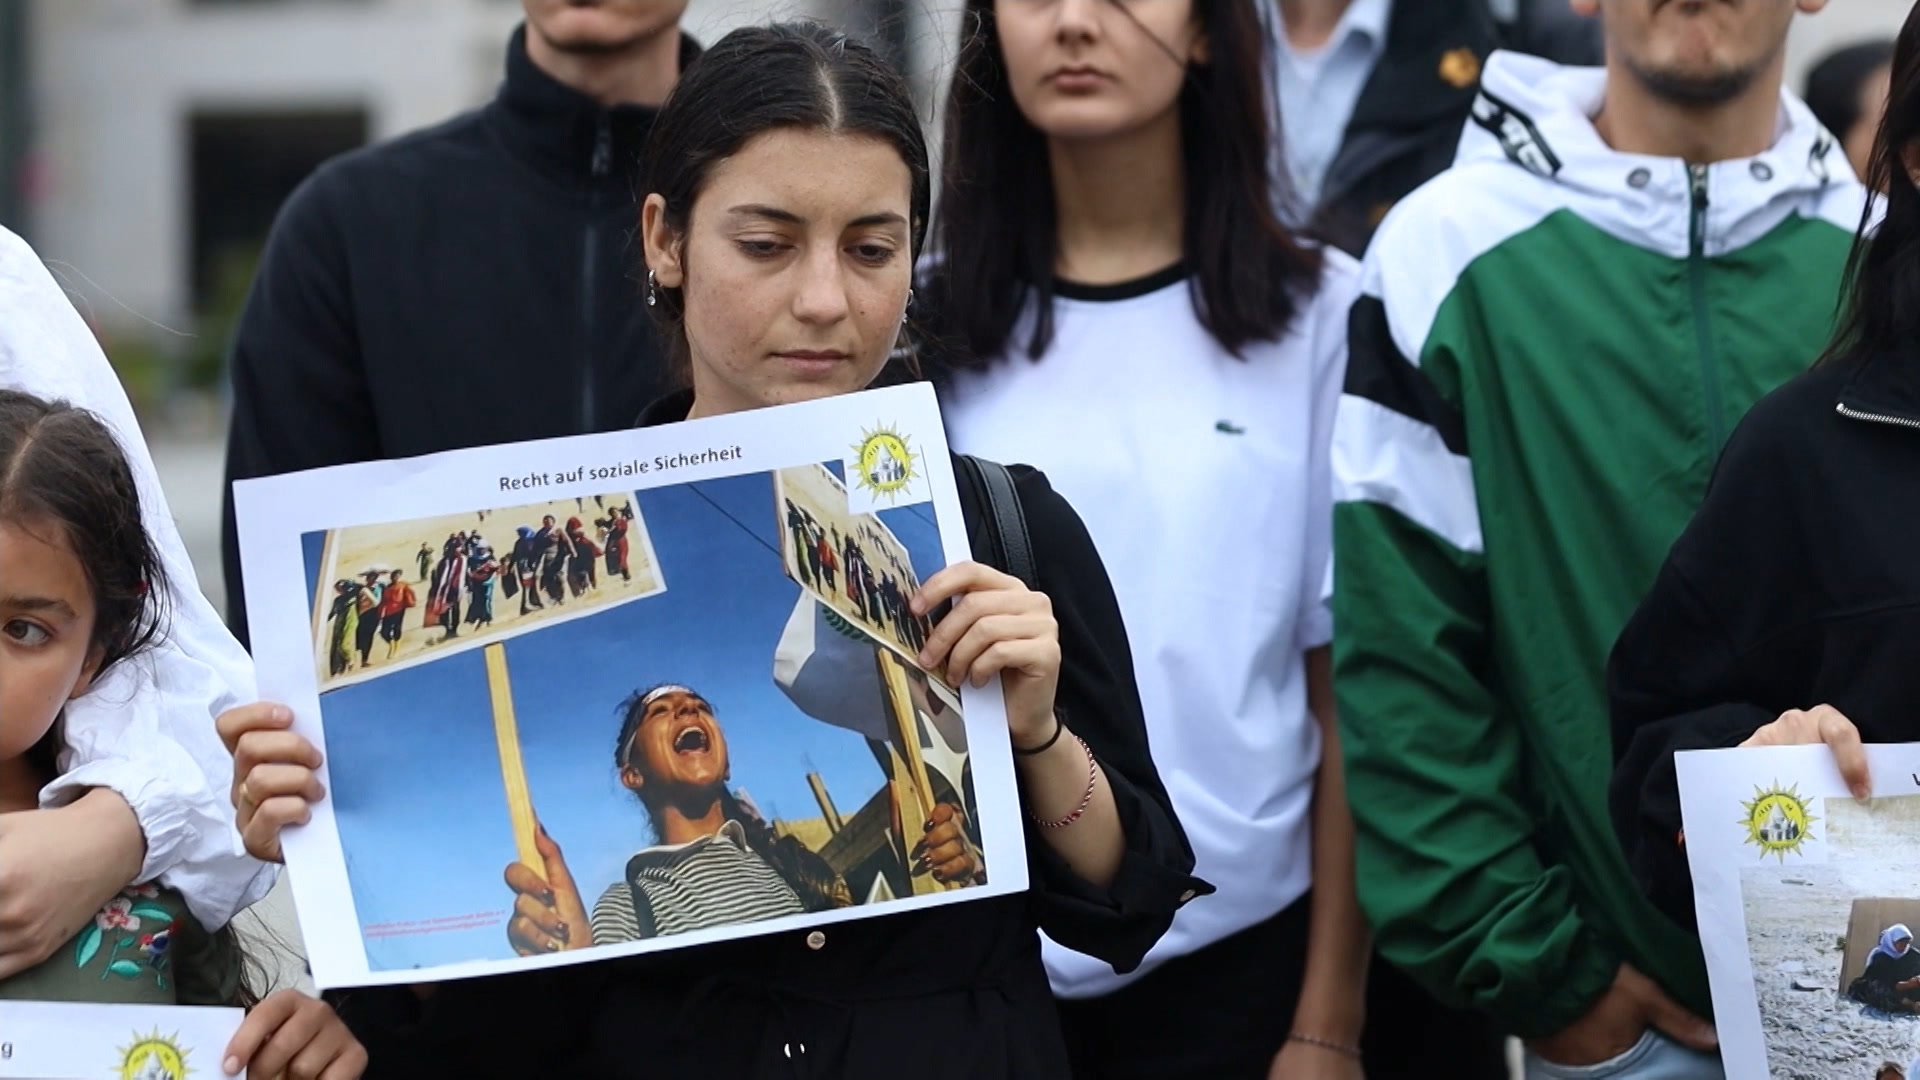 وقفة احتجاجية في برلين للتذكير بمأساة الإيزيديين